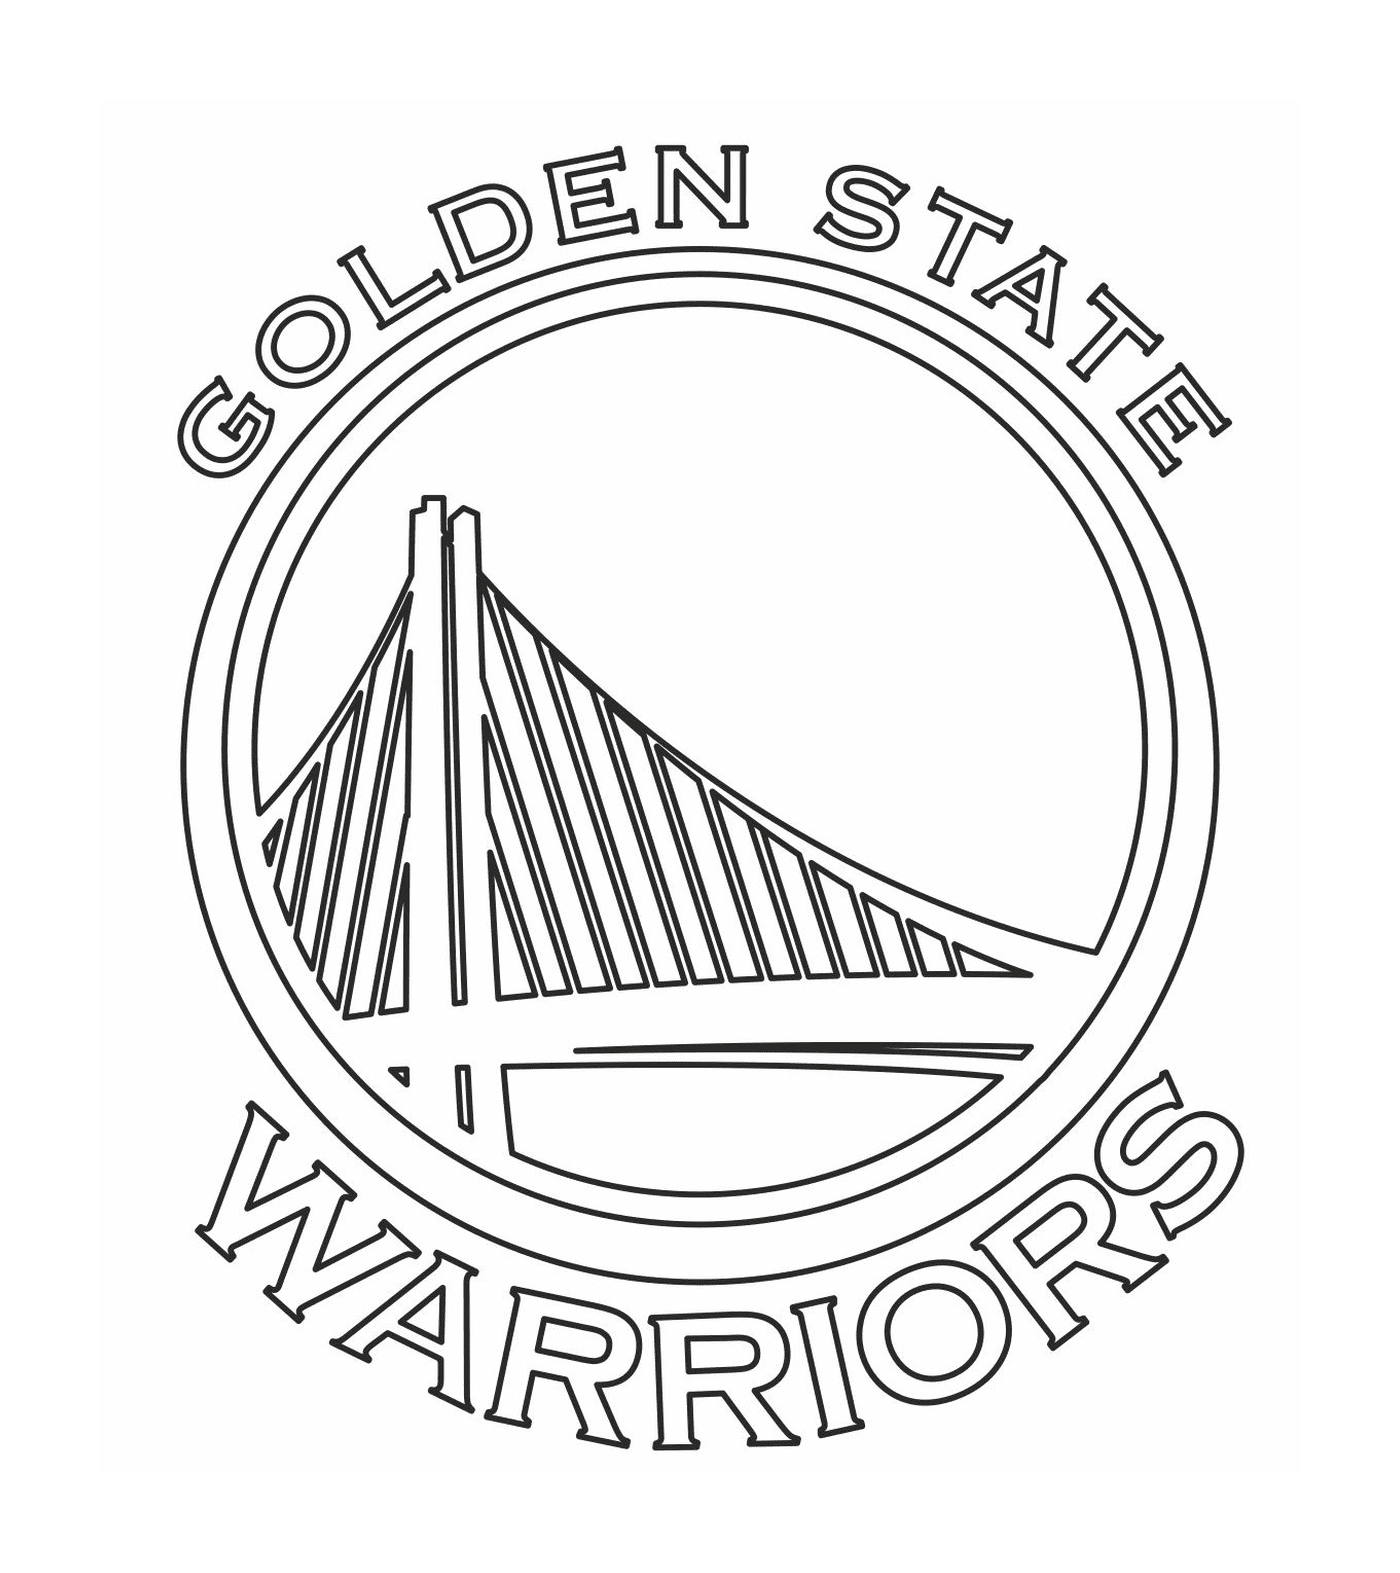  شعار محاربي الدولة الذهبية NBA 